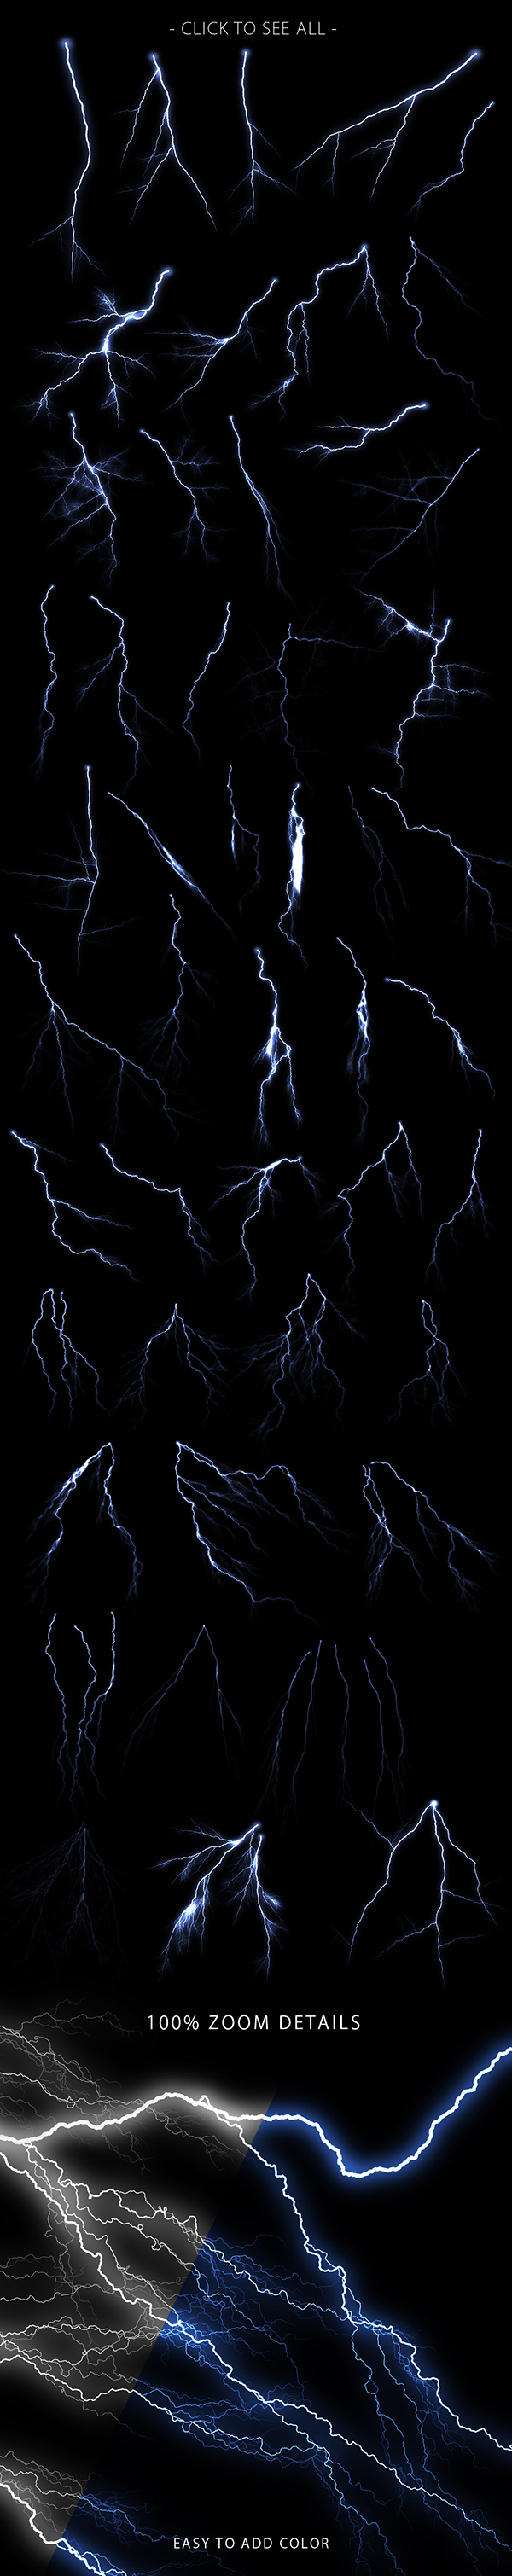 Lightning-photoshop-brushest-prev2.jpg